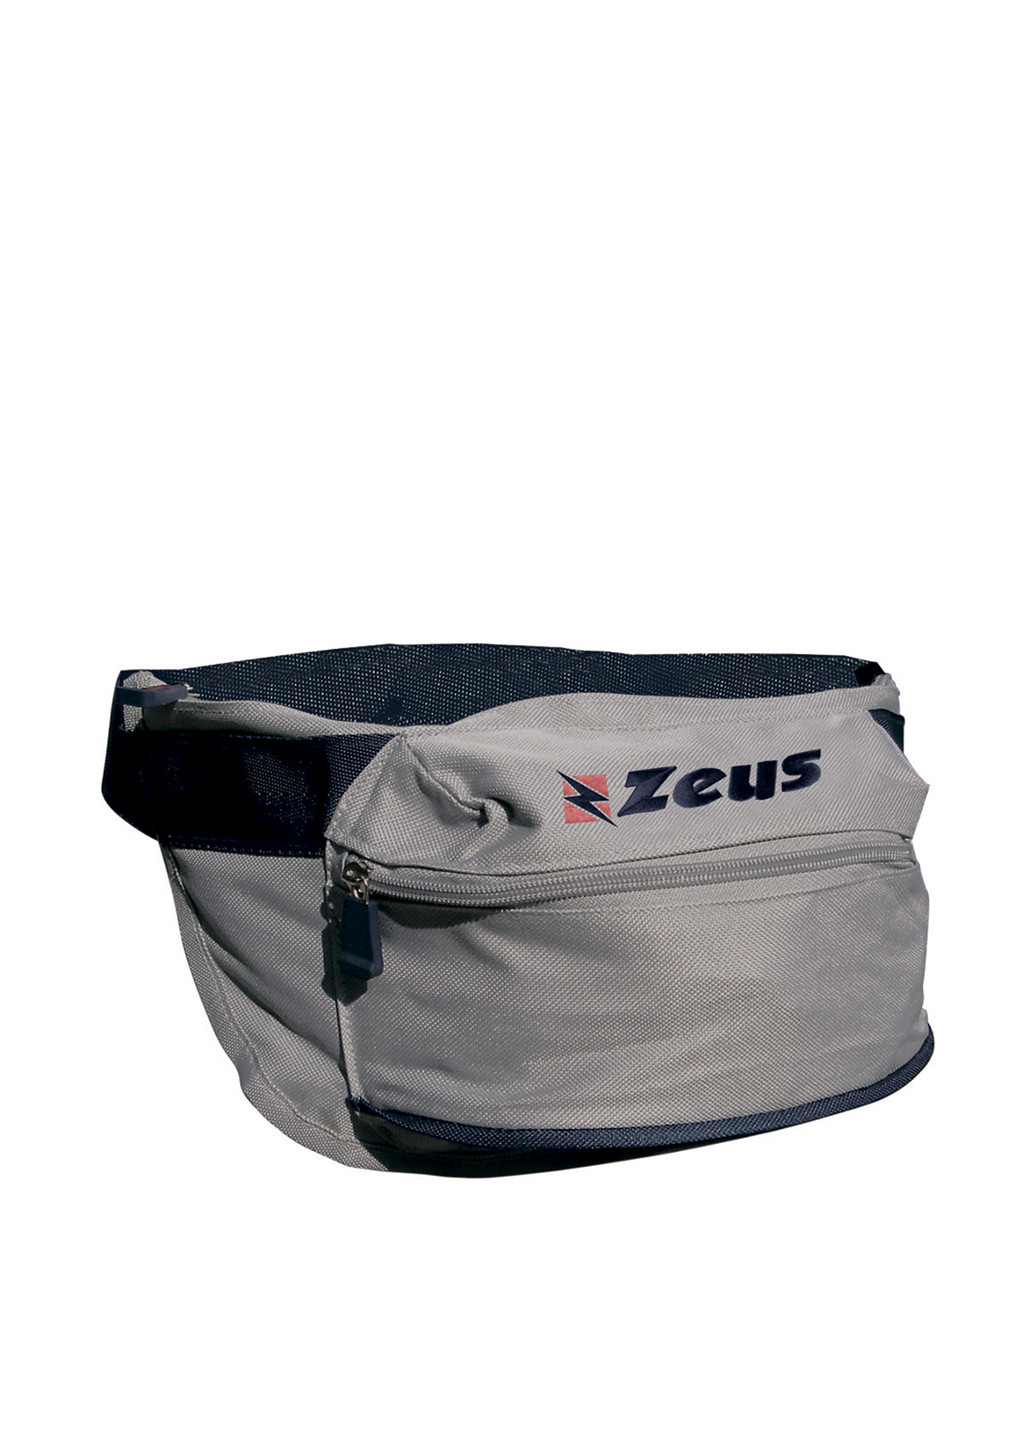 Сумка Zeus поясная сумка логотип грифельно-серая спортивная